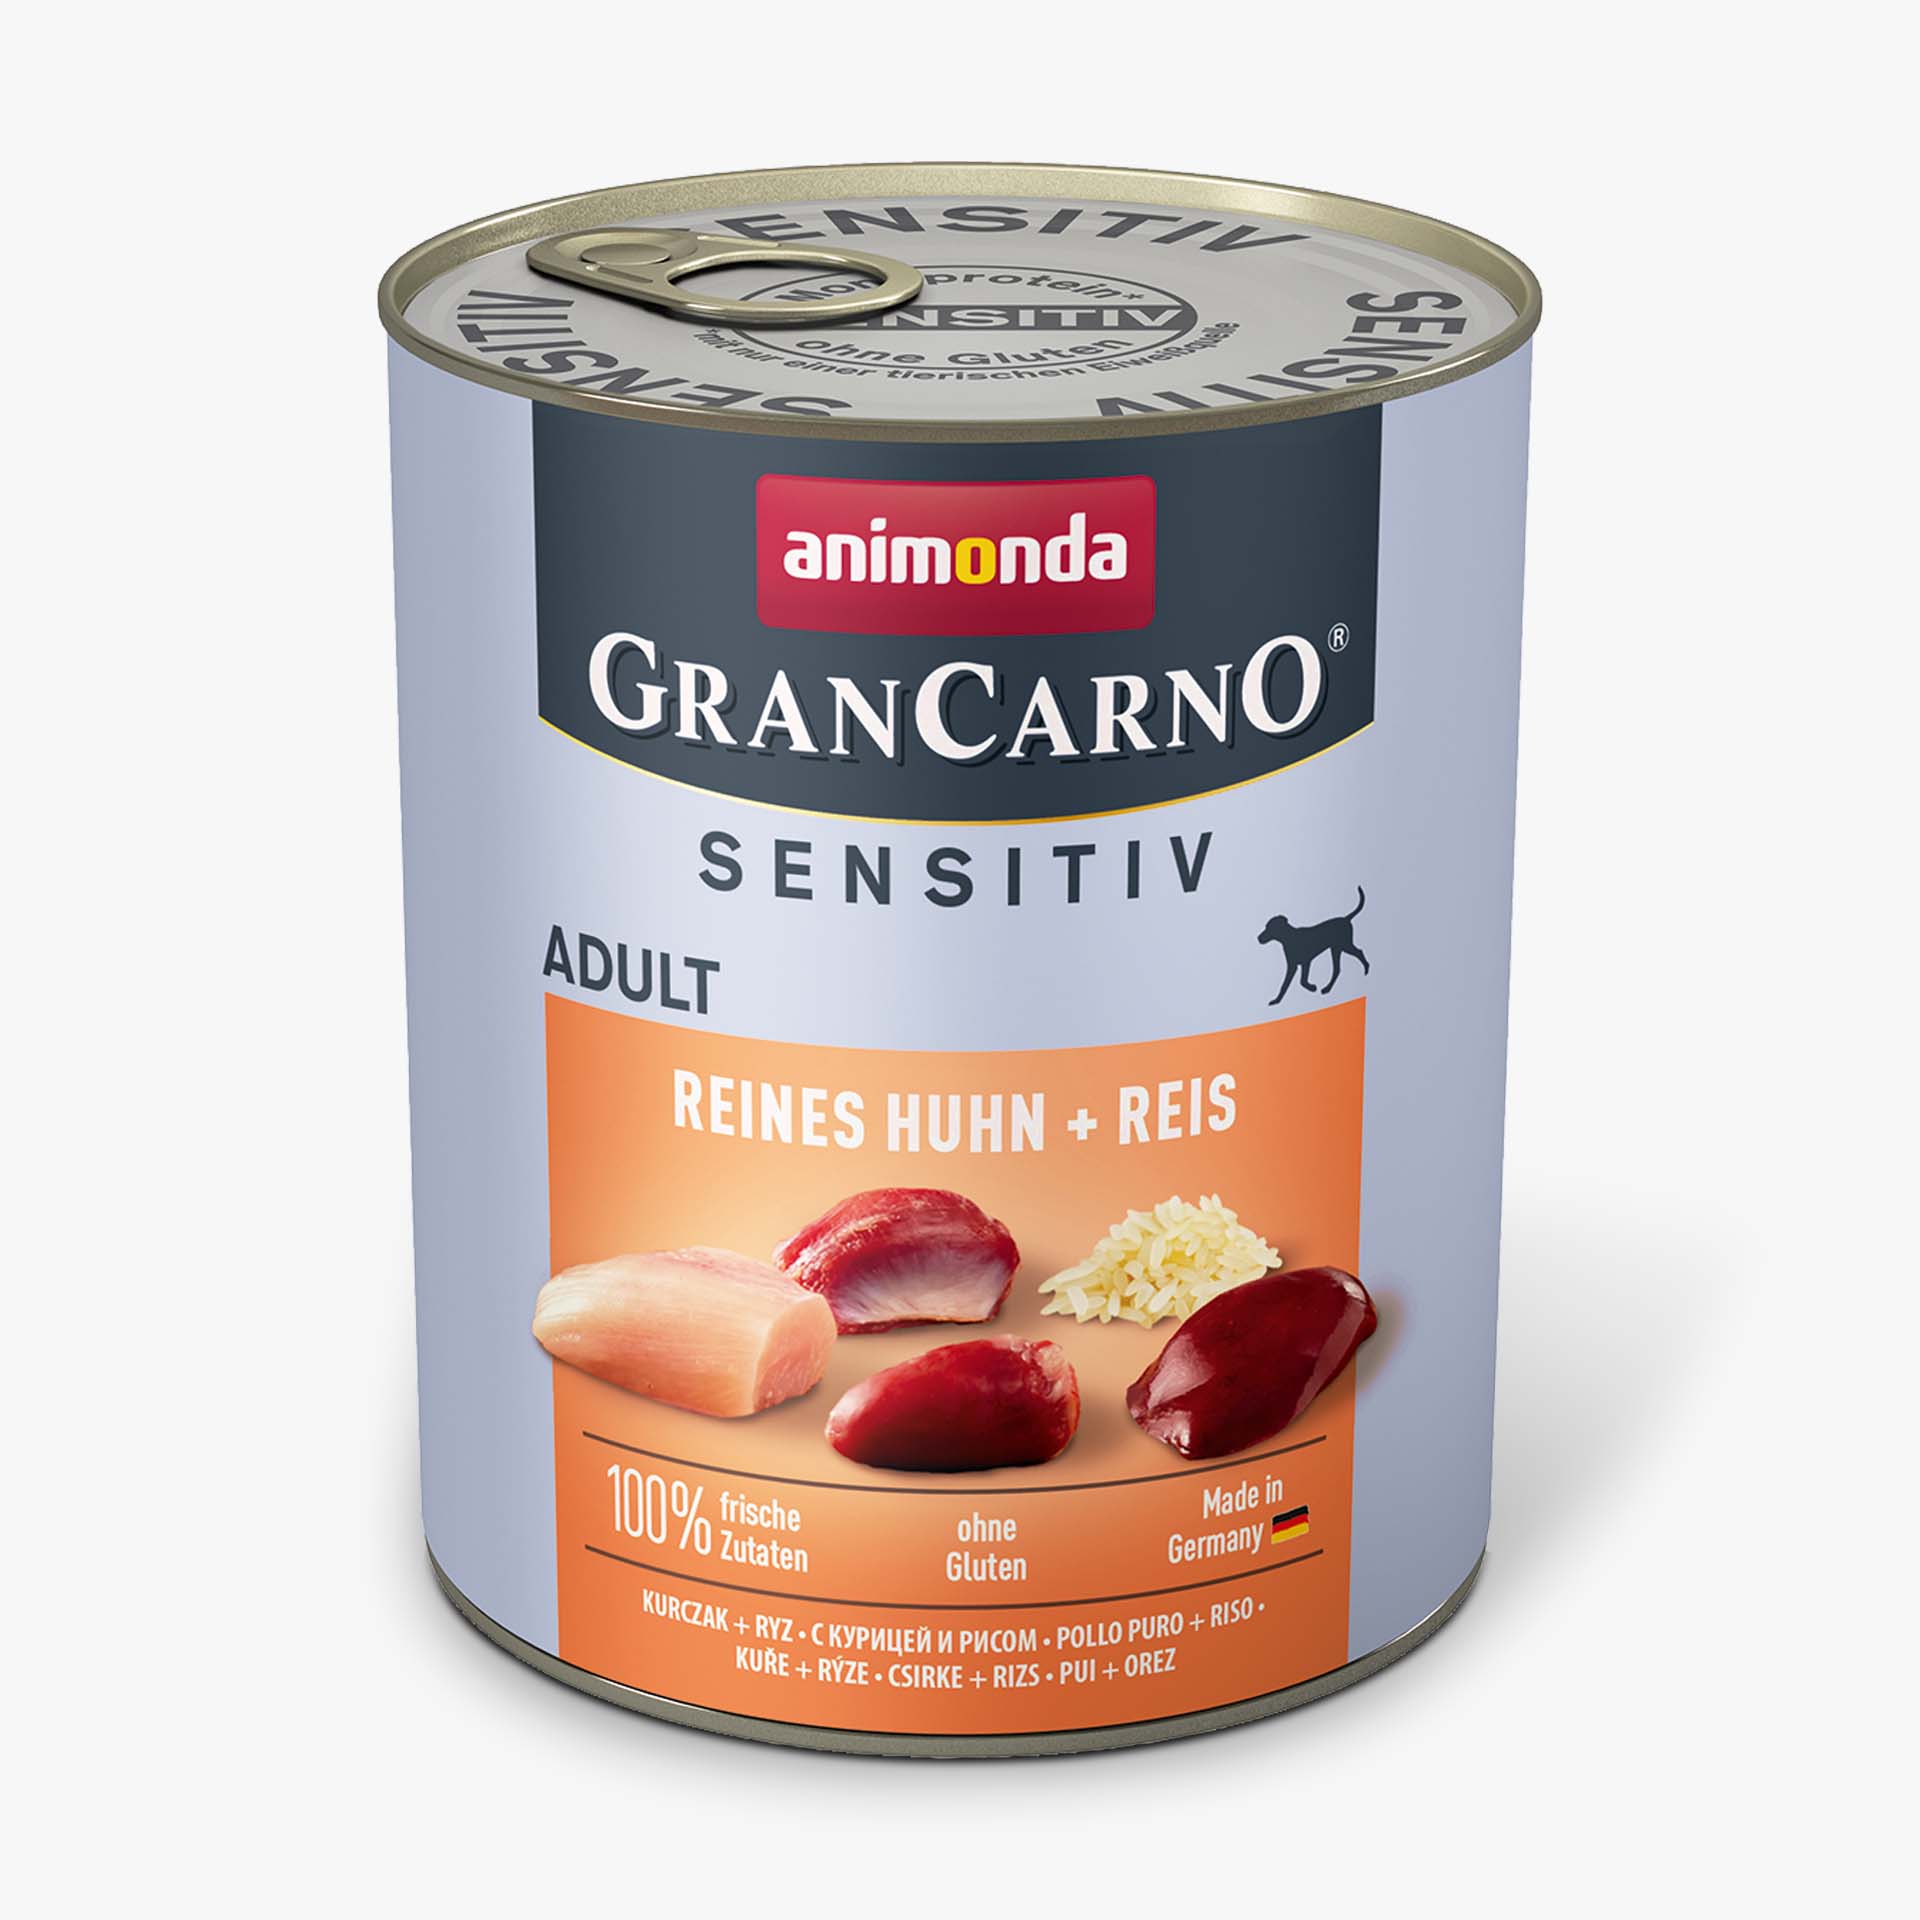 GranCarno pure chicken + rice Sensitiv